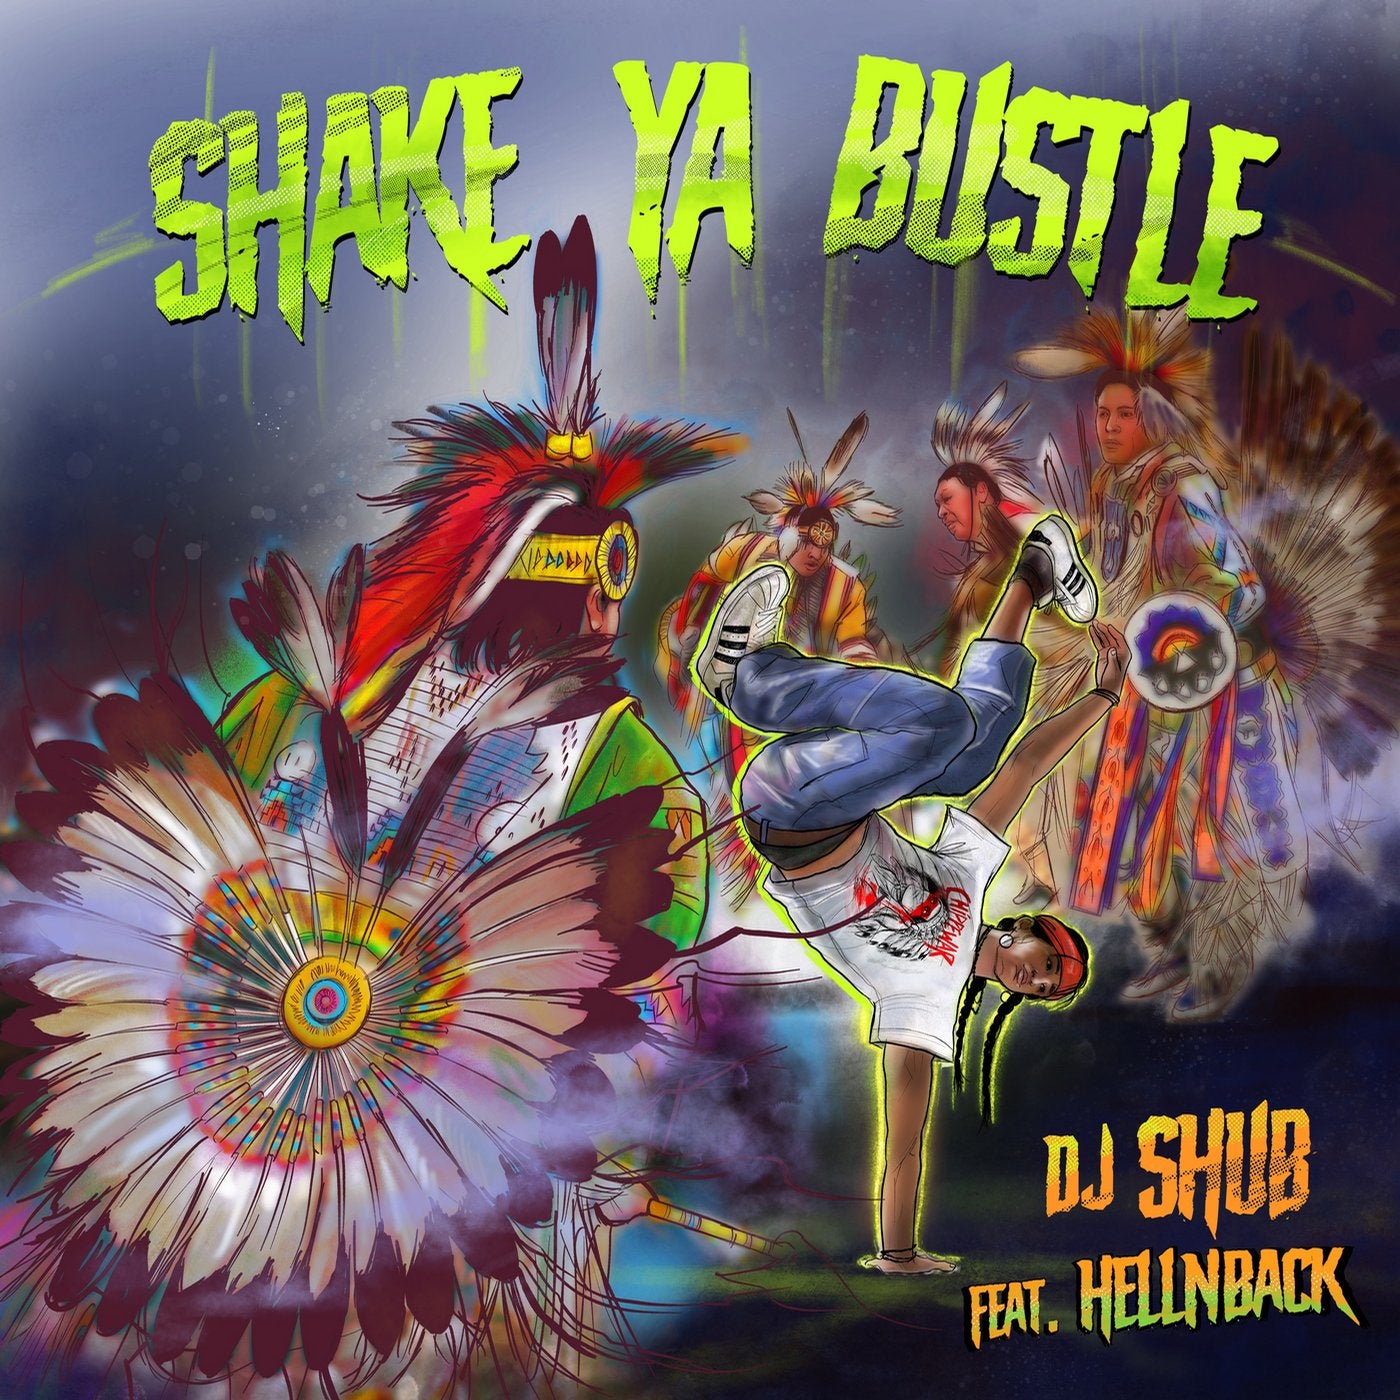 Shake Ya Bustle